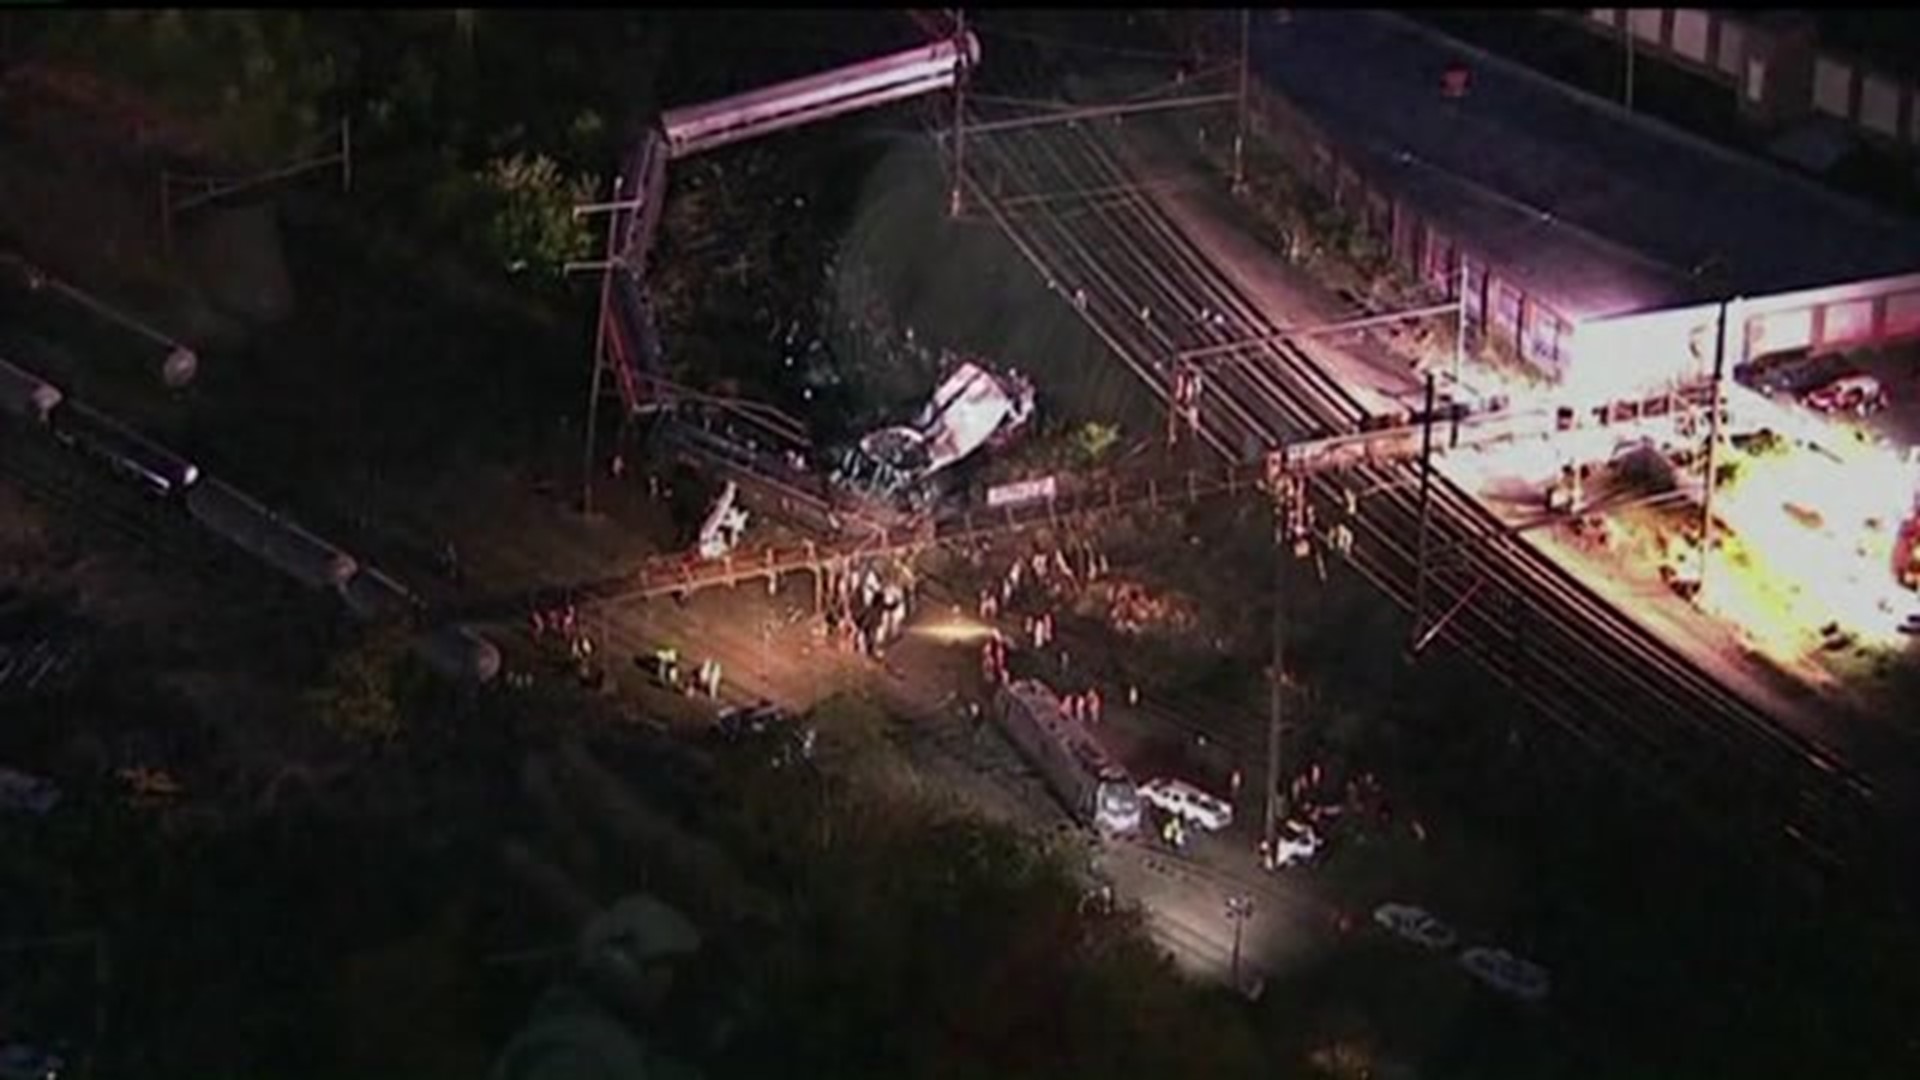 Several killed in Amtrak crash